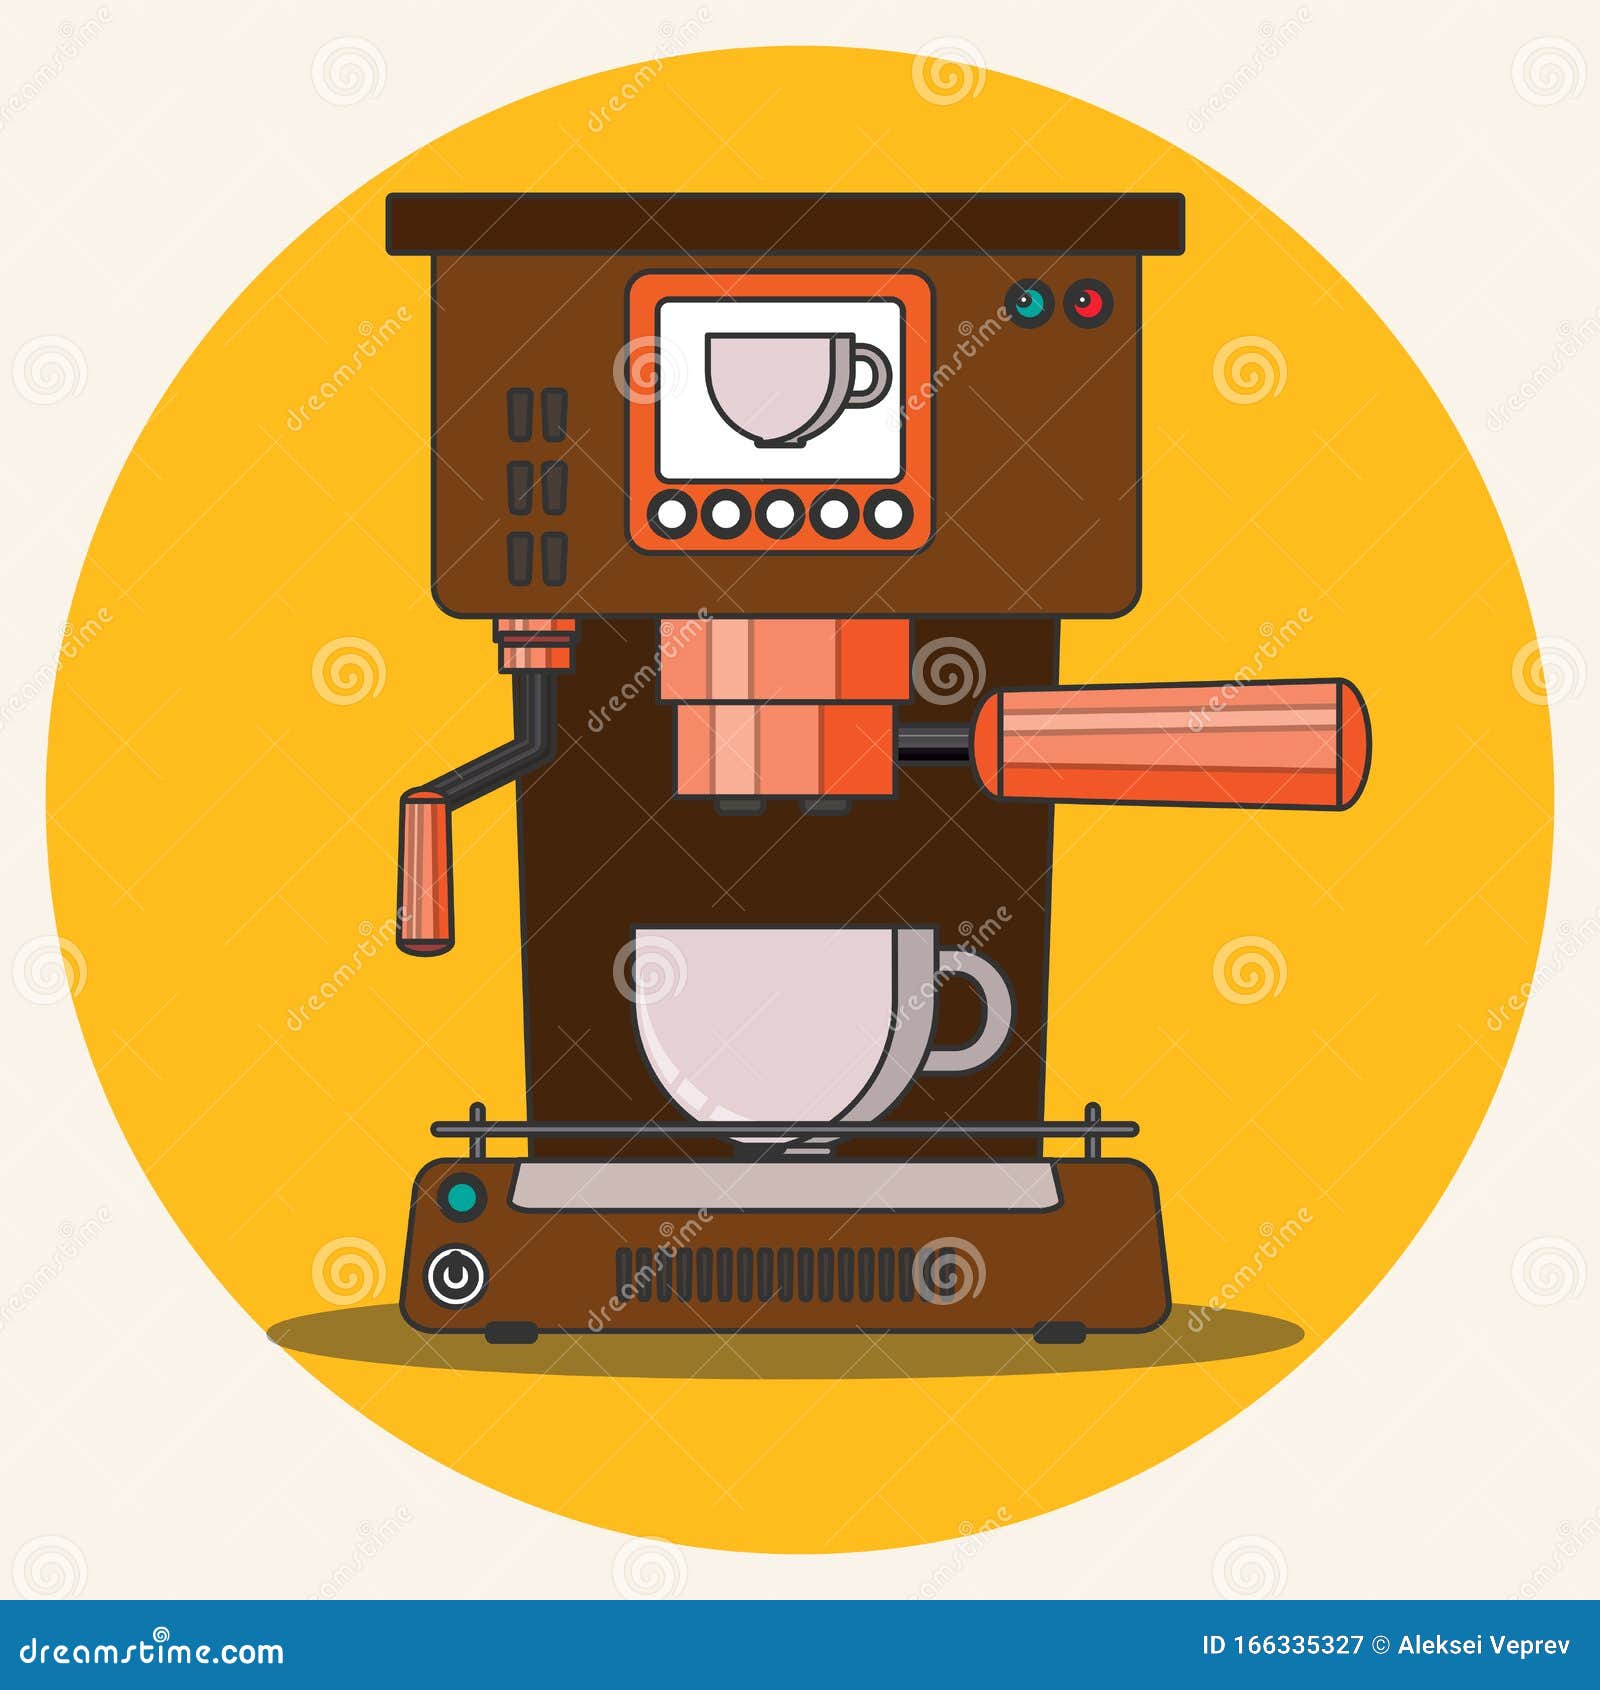 prepare coffee machine for make coffee by barista